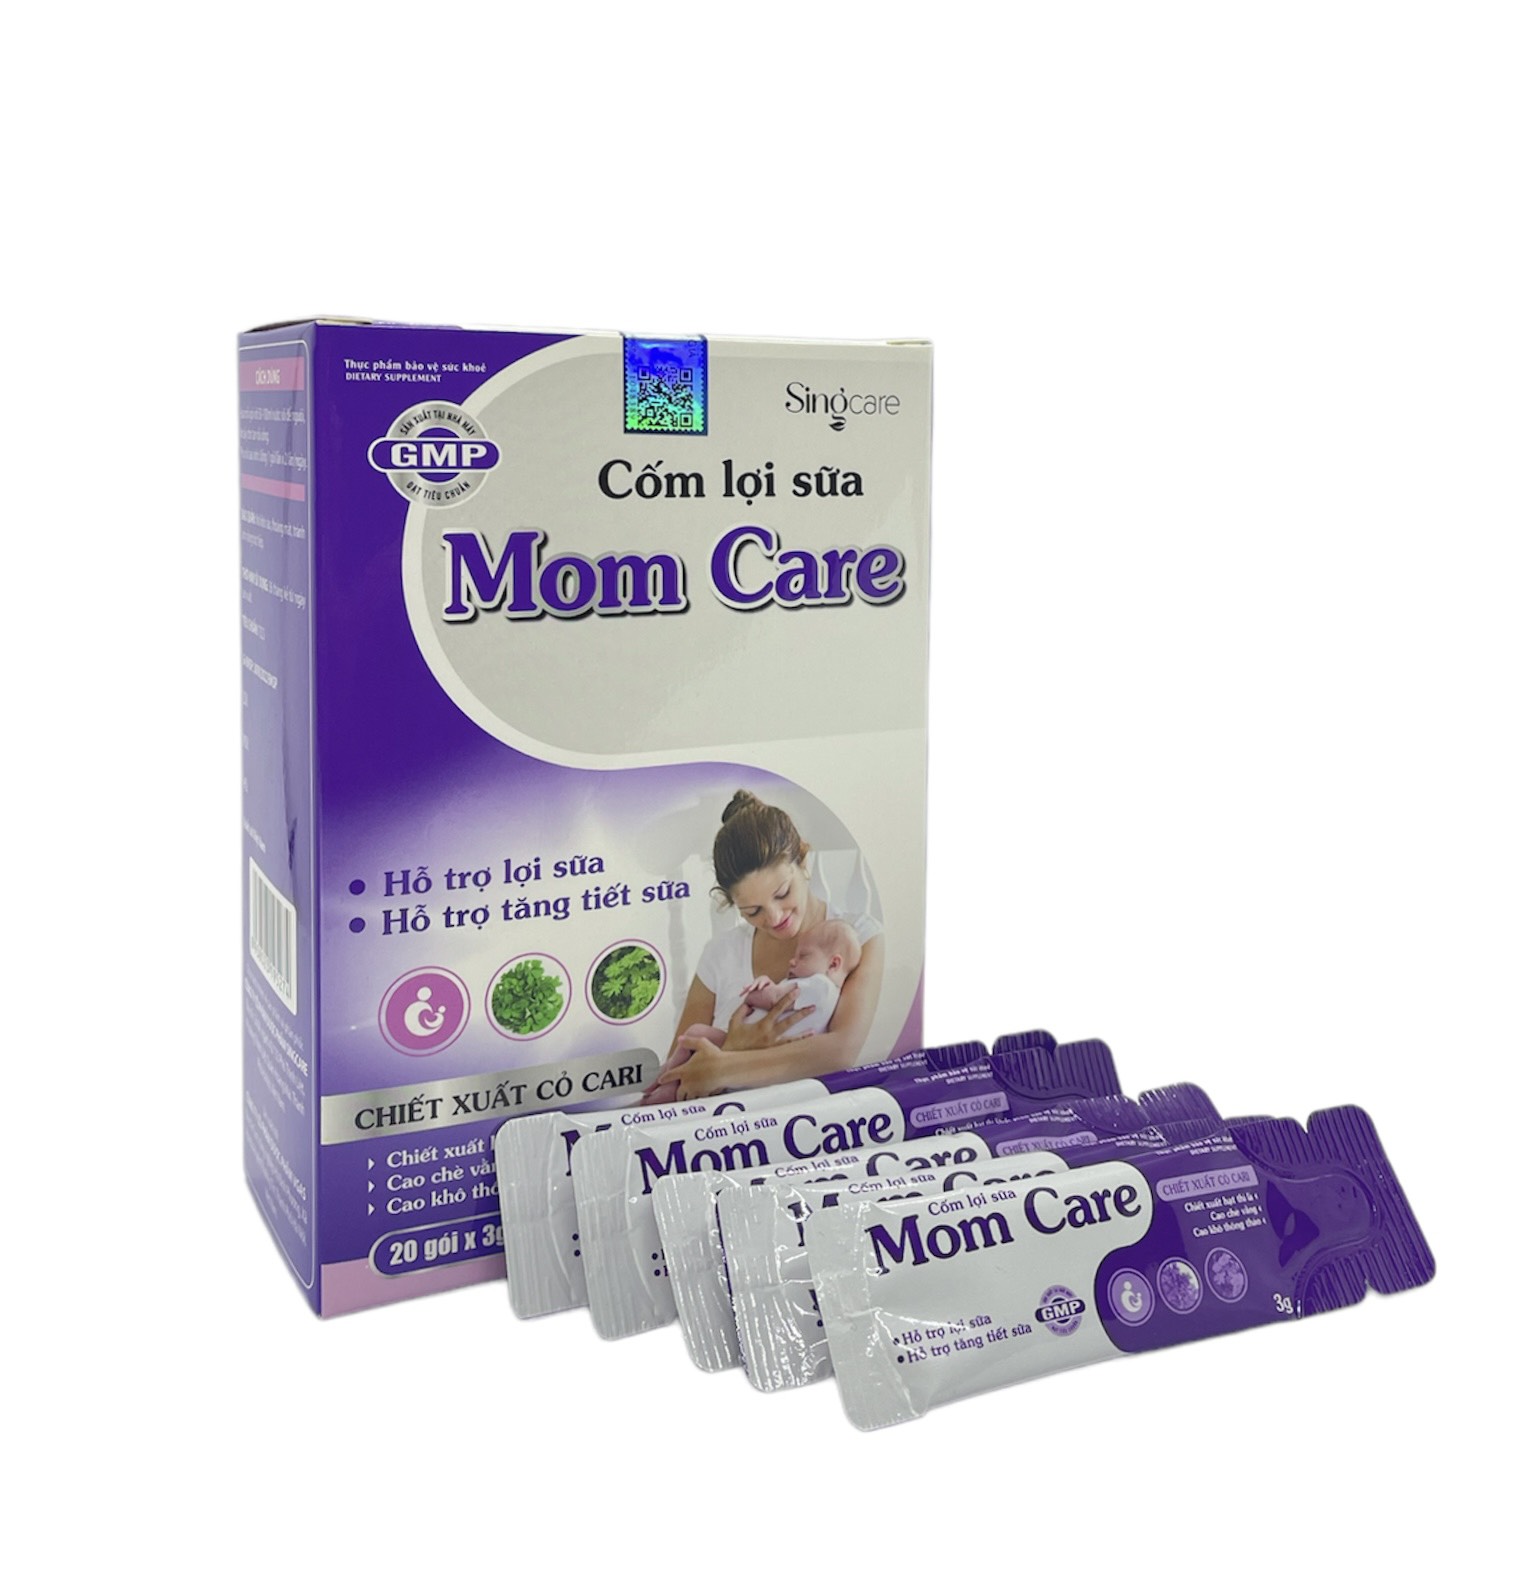 Thực phẩm bảo vệ sức khoẻ cốm lợi sữa MOMCARE - hỗ trợ tăng tiết sữa, giảm nguy cơ tắc tuyến sữa cho mẹ sau sinh